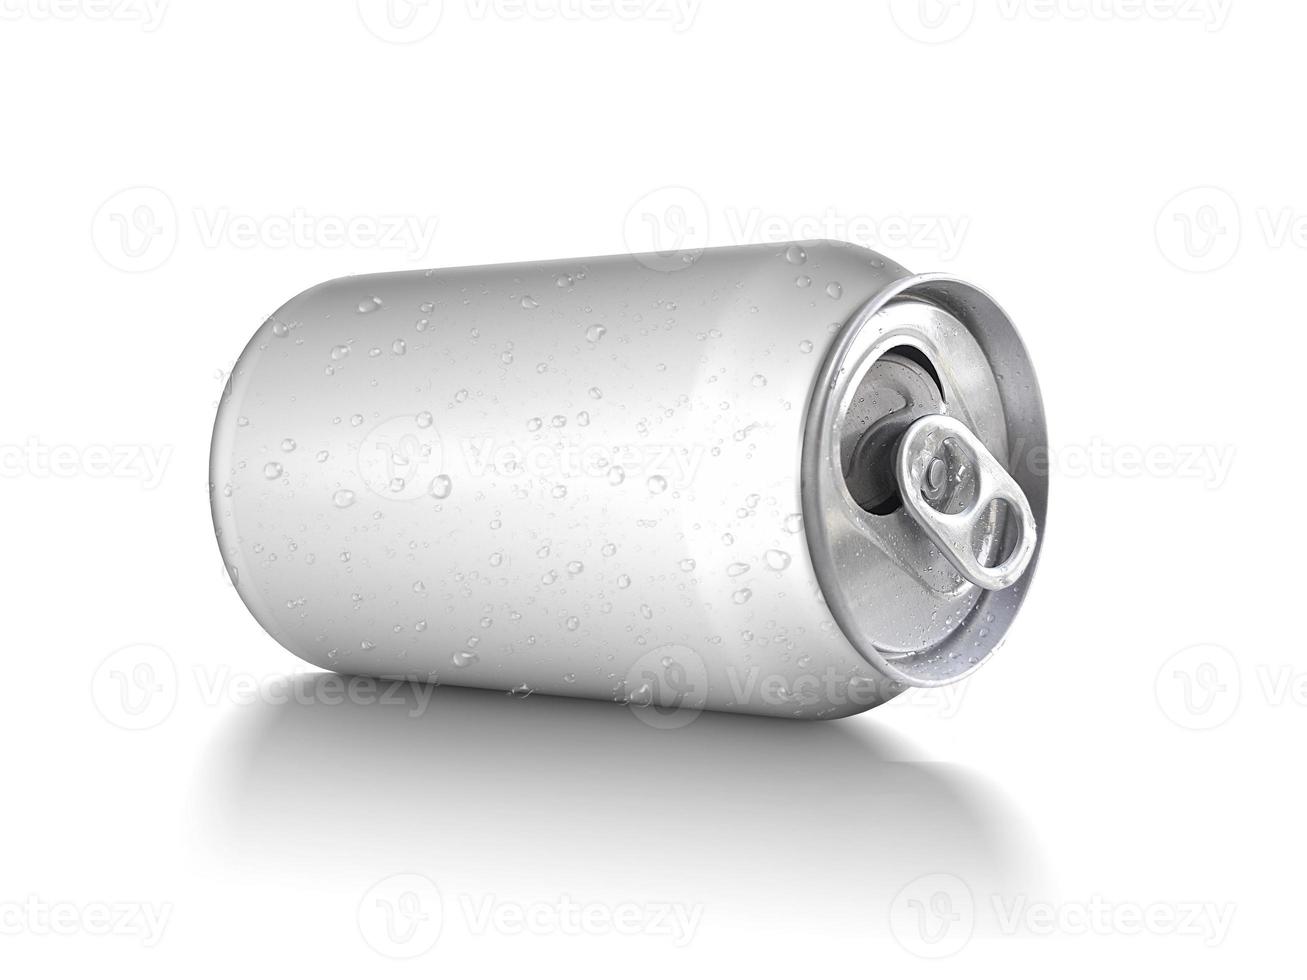 refrigerante em branco vazio amassado e lata de cerveja lixo, lixo esmagado pode reciclar isolado no fundo branco foto